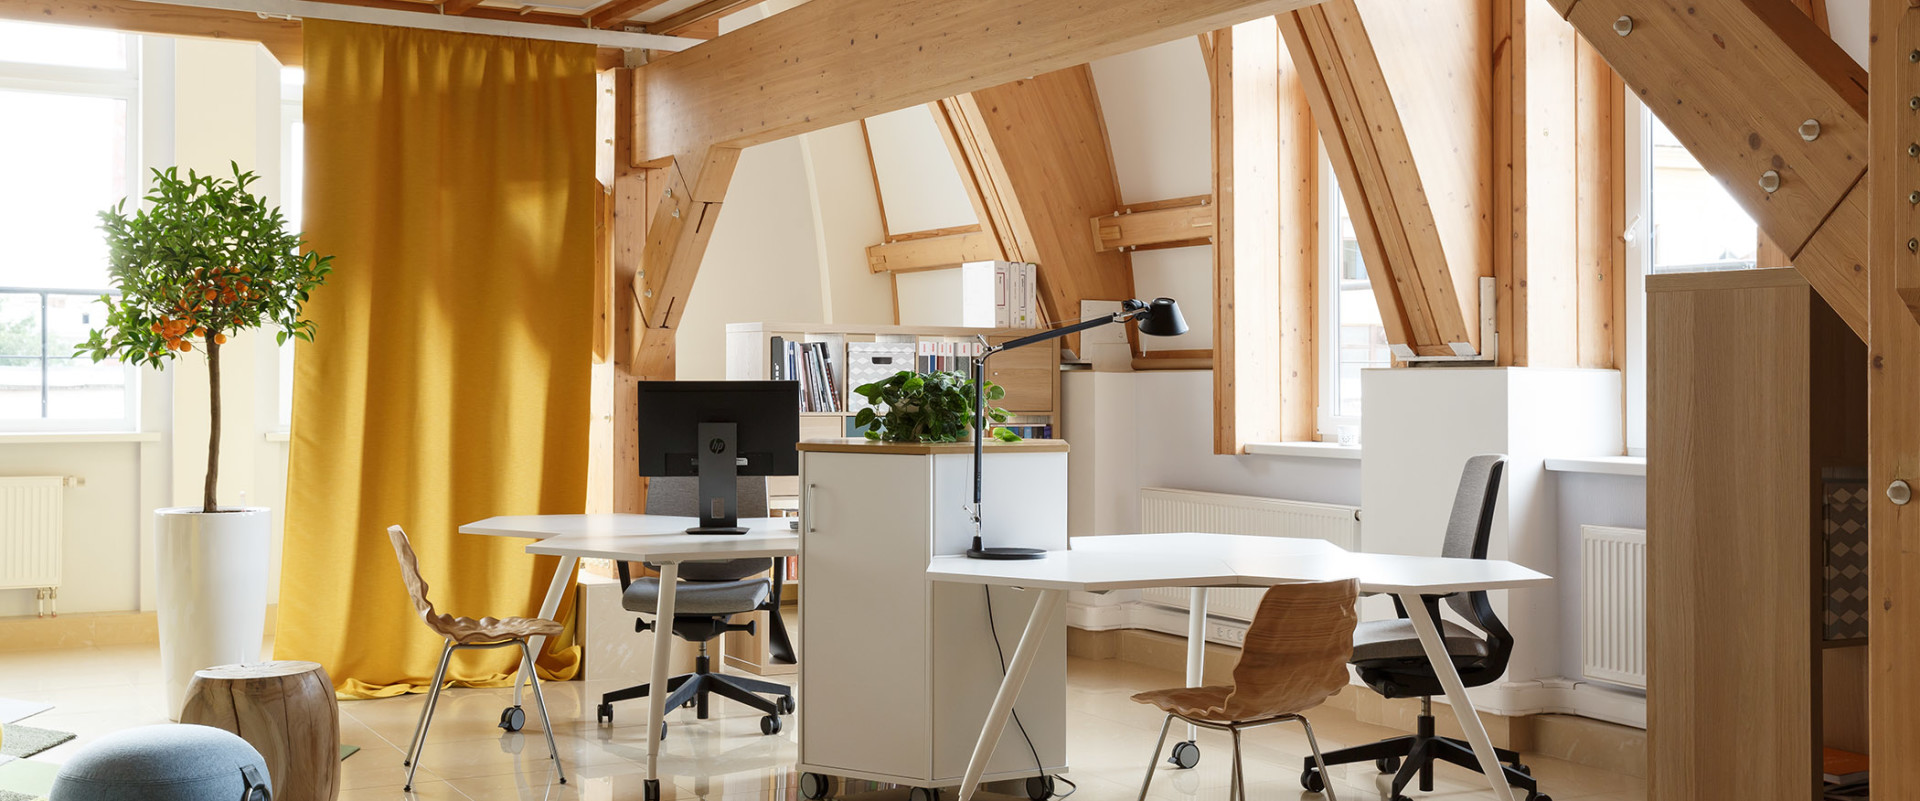 Студия DESIGNIC: интерьер офиса в скандинавском стиле 